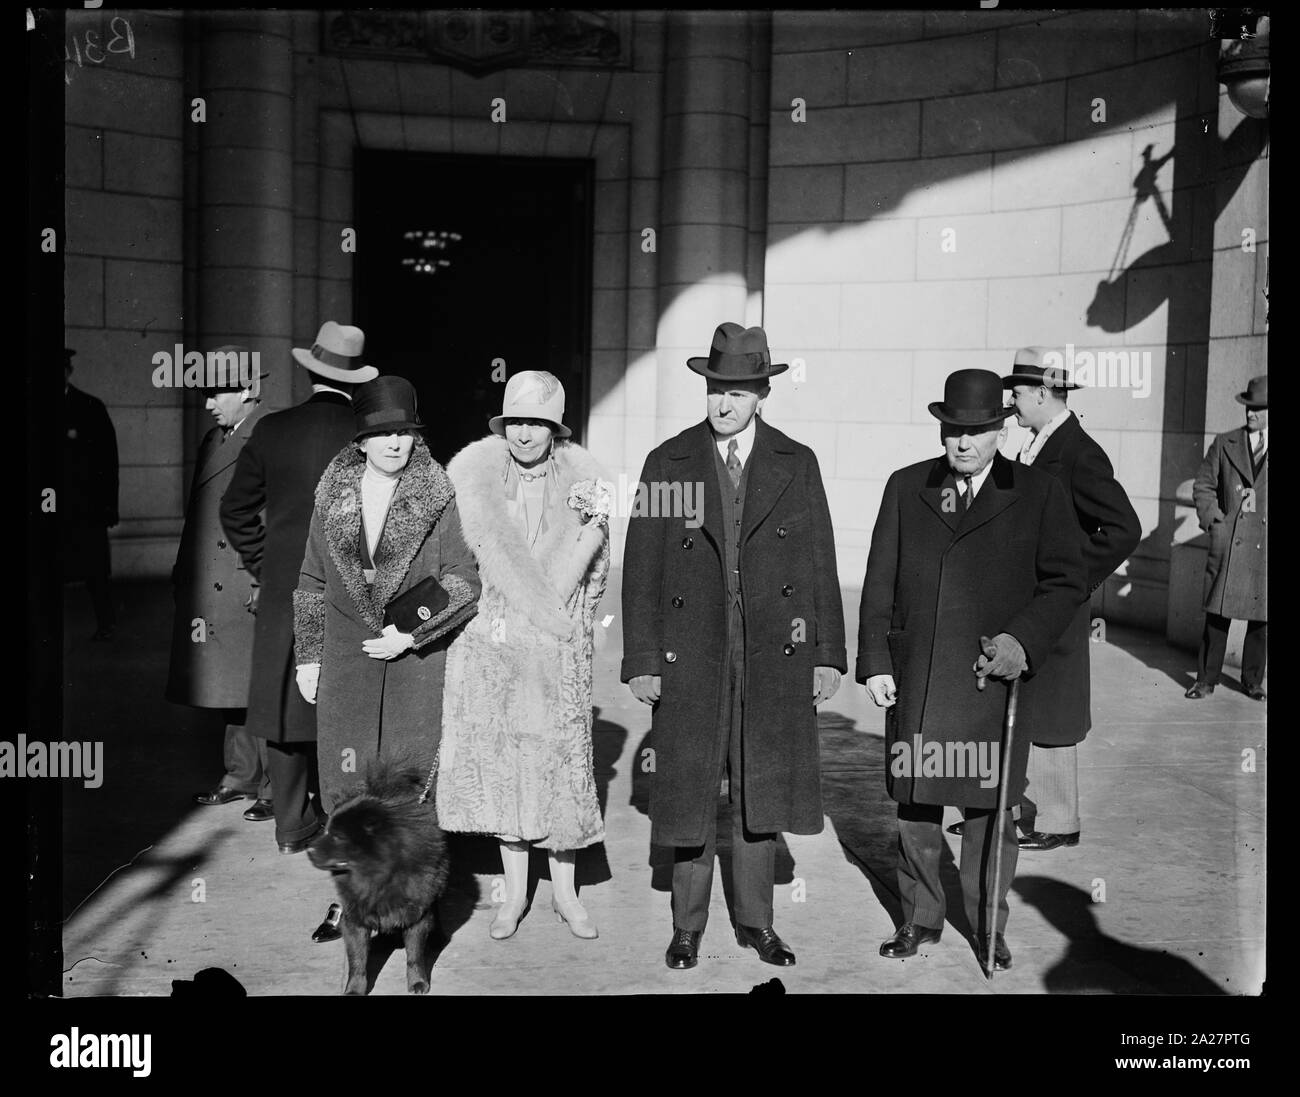 Le président et Mme Coolidge à leur arrivée à la gare Union, Washington aujourd'hui à partir de leurs vacances sur Sapelo Island, Ga, dans le groupe, de gauche à droite, Mme Kellogg, épouse du secrétaire d'État, Mme Coolidge, Président Coolidge, Secrétaire Kellogg Banque D'Images